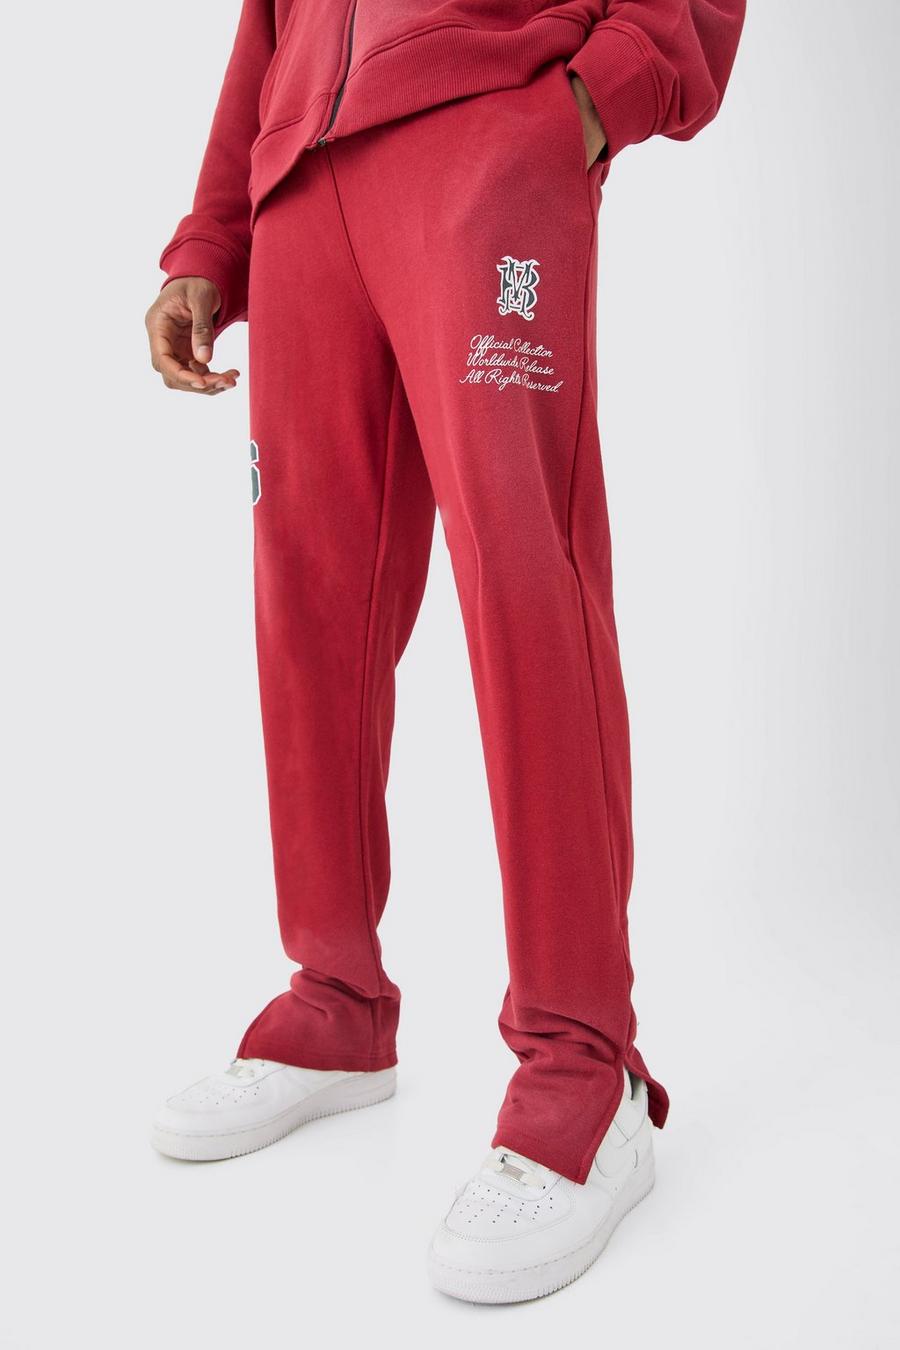 Pantaloni tuta Tall in lavaggio con rovescio a ricci e spacco laterale, Red